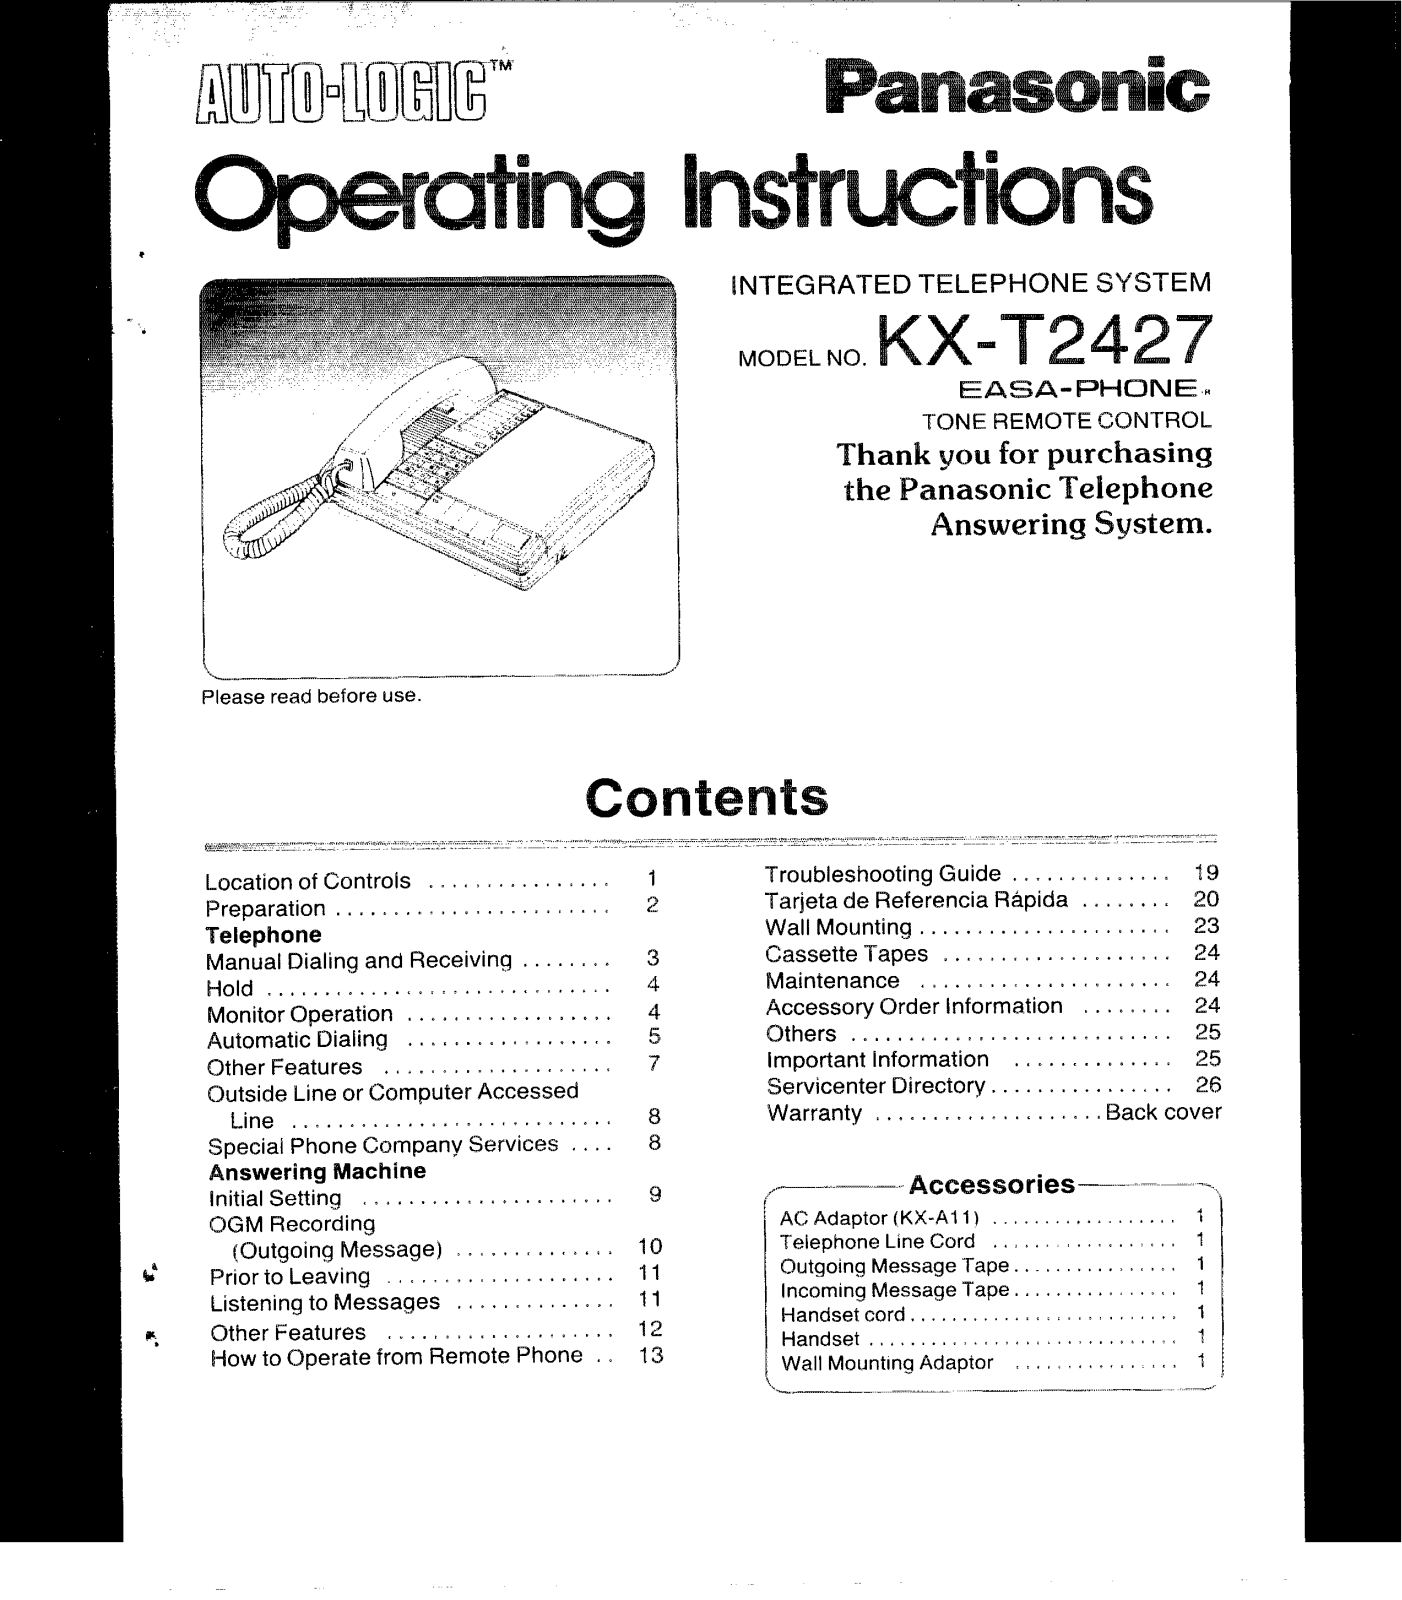 Panasonic kx-t2427 Operation Manual